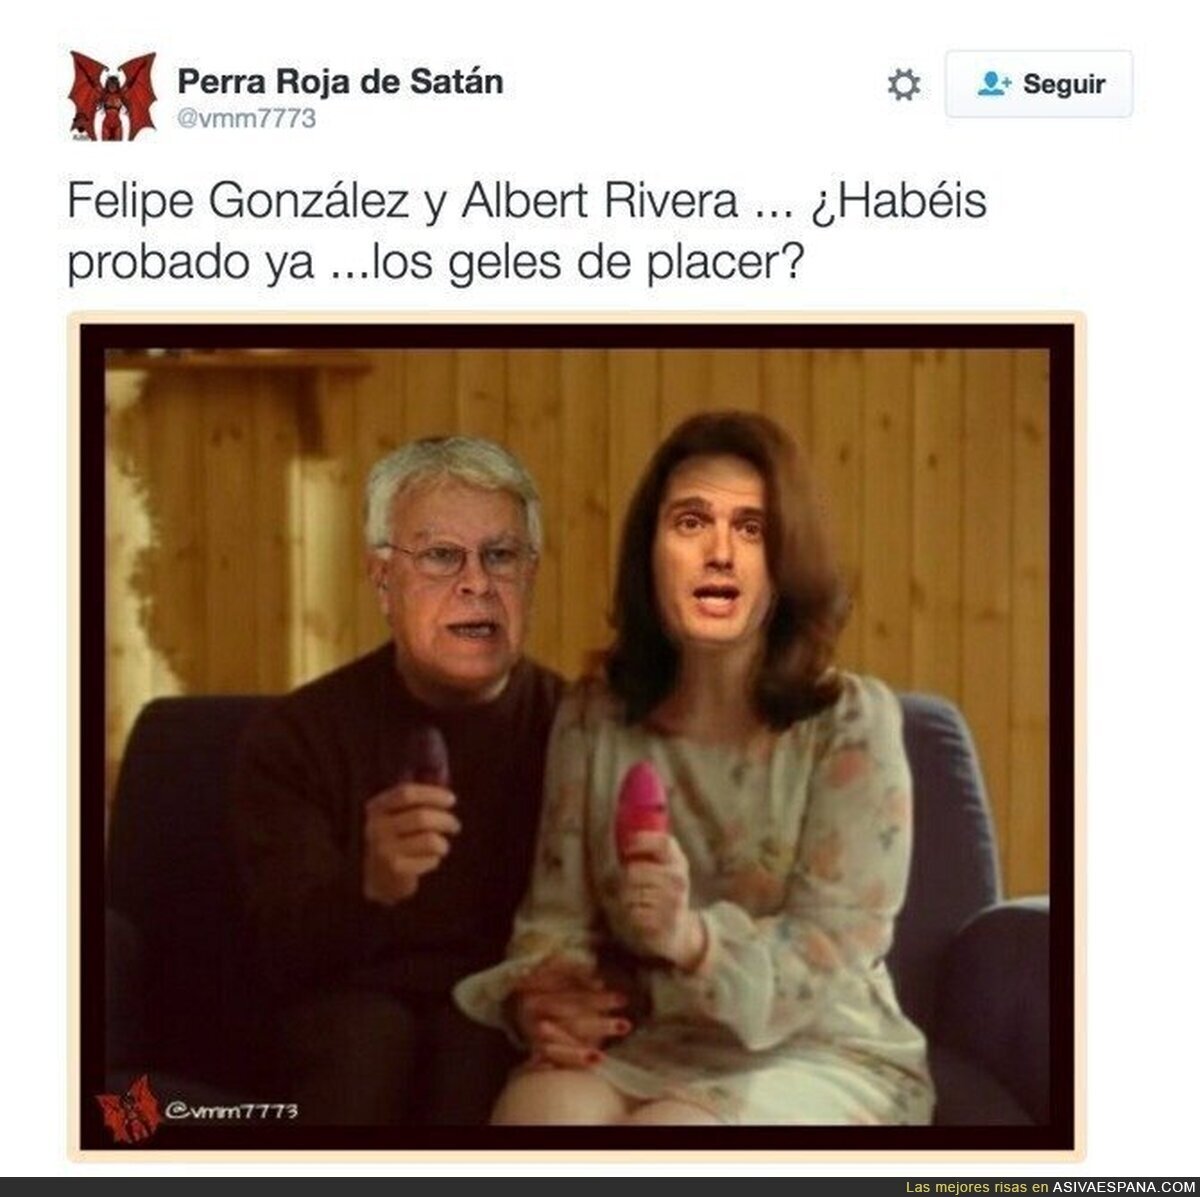 Mientras tanto, Albert Rivera y Felipe González...